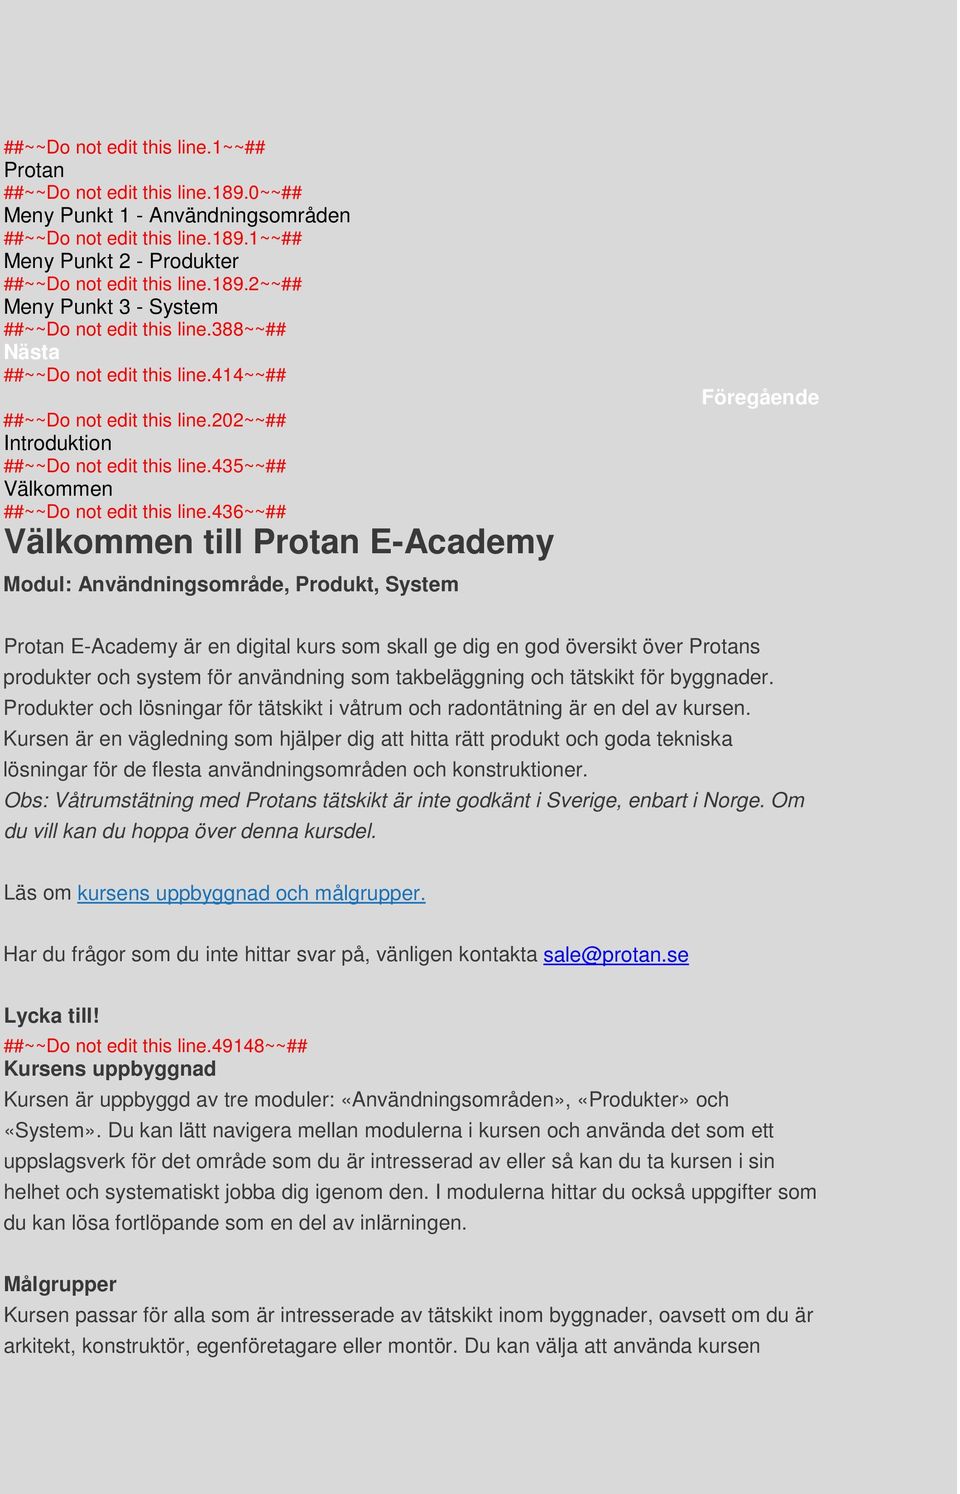 436~~## Välkommen till Protan E-Academy Modul: Användningsområde, Produkt, System Föregående Protan E-Academy är en digital kurs som skall ge dig en god översikt över Protans produkter och system för